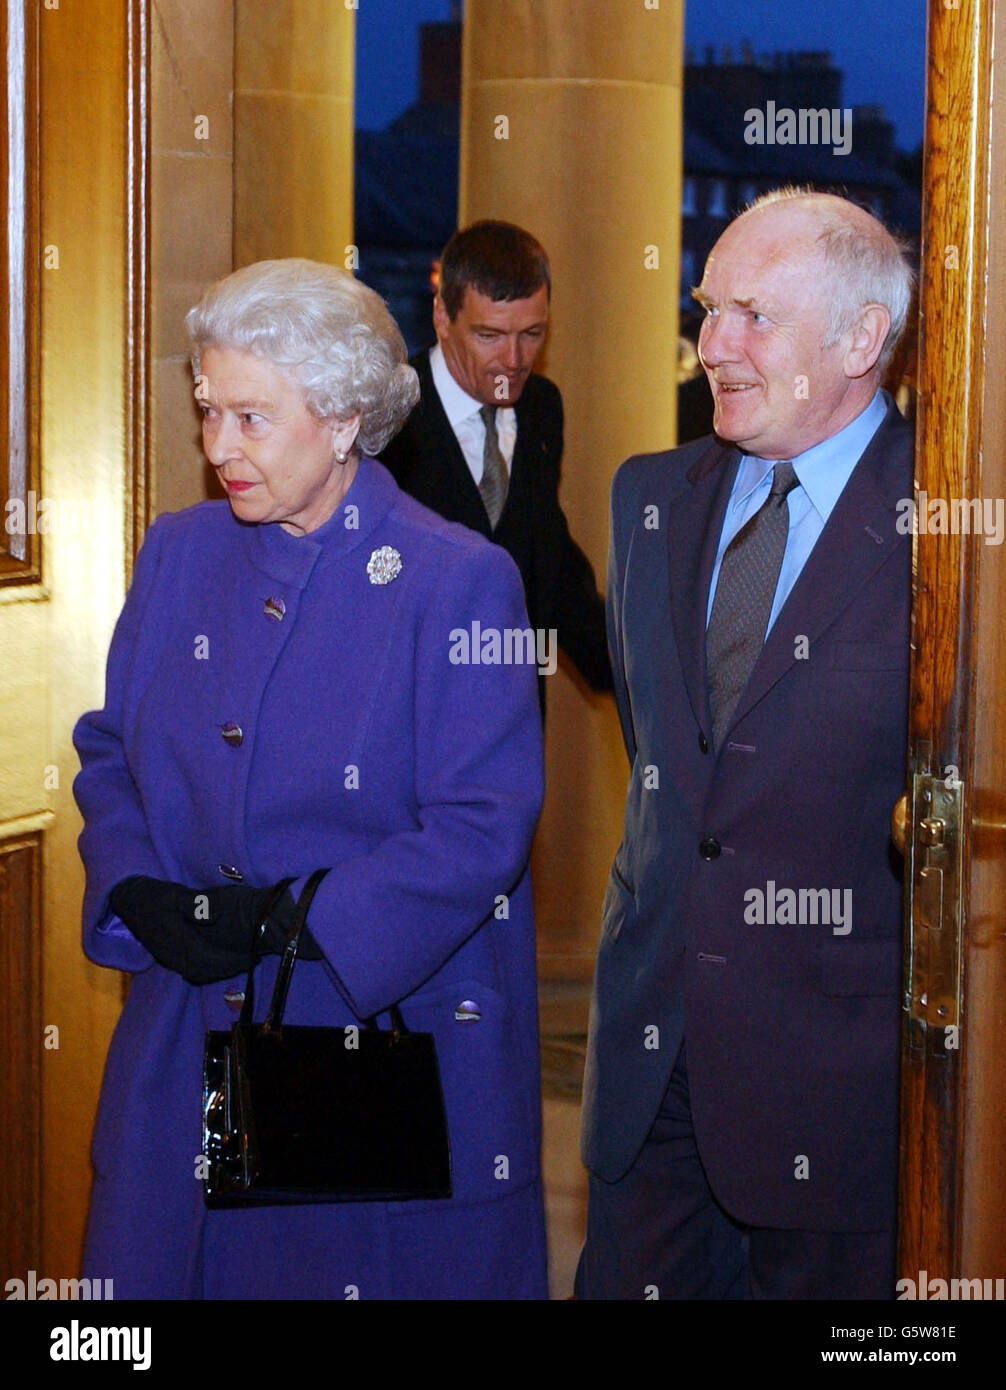 Königin Elizabeth II. Mit dem nordirischen Außenminister Dr. John Reid (rechts) im Hillsborough Castle, Nordirland. Die Königin kam heute Abend in Nordirland an, während der letzten Etappe ihrer Golden Jubilee-Tour. Stockfoto